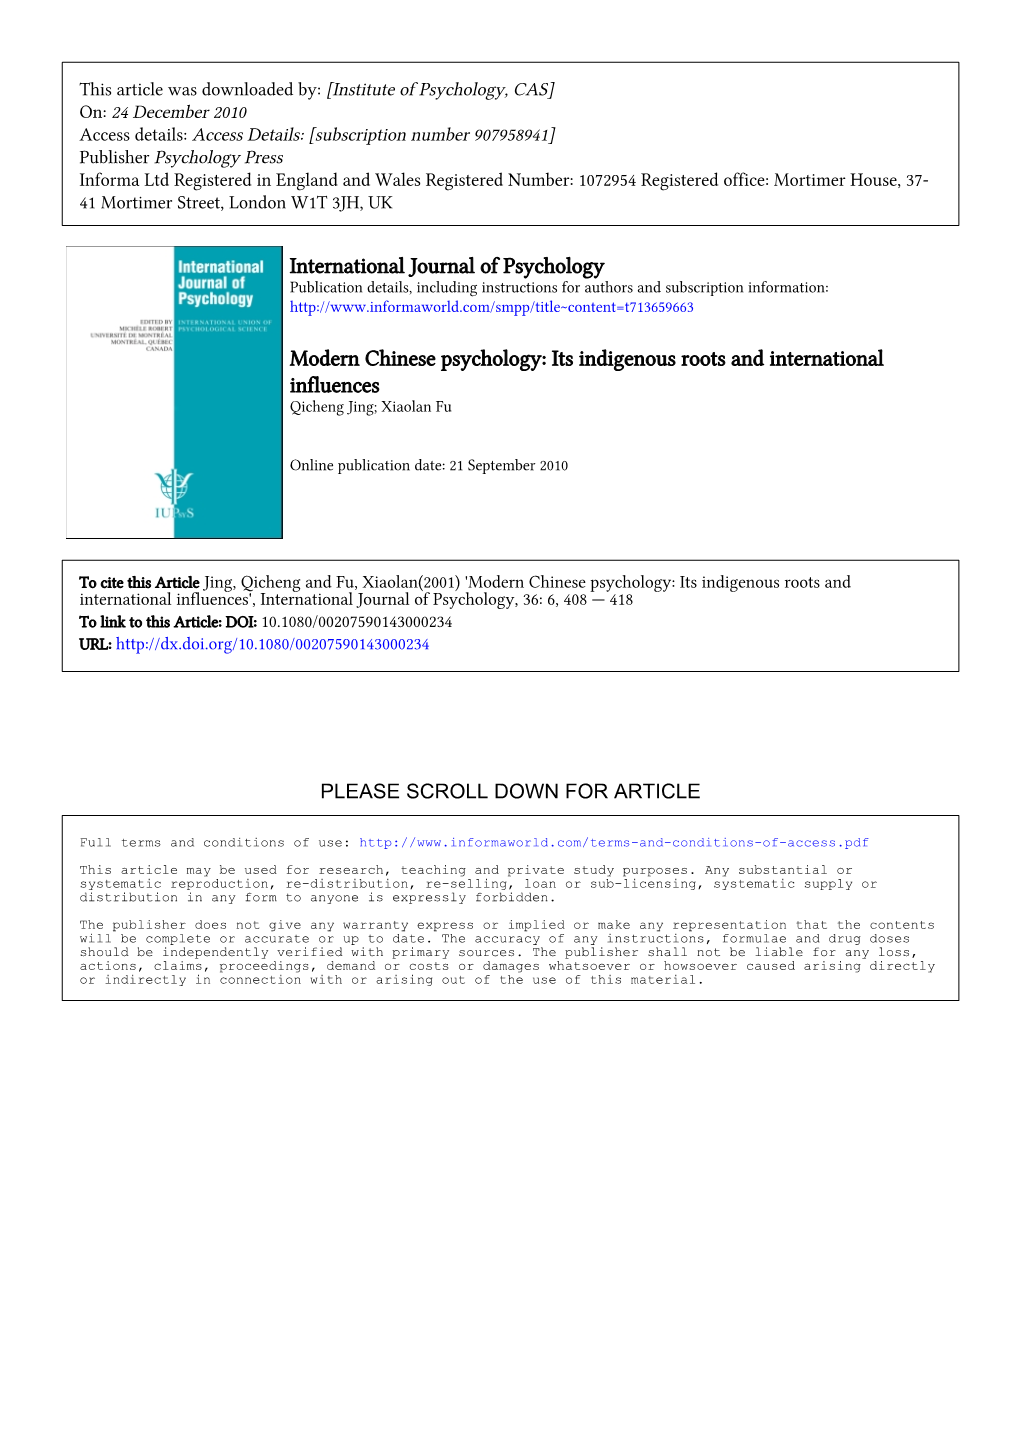 International Journal of Psychology Modern Chinese Psychology: Its